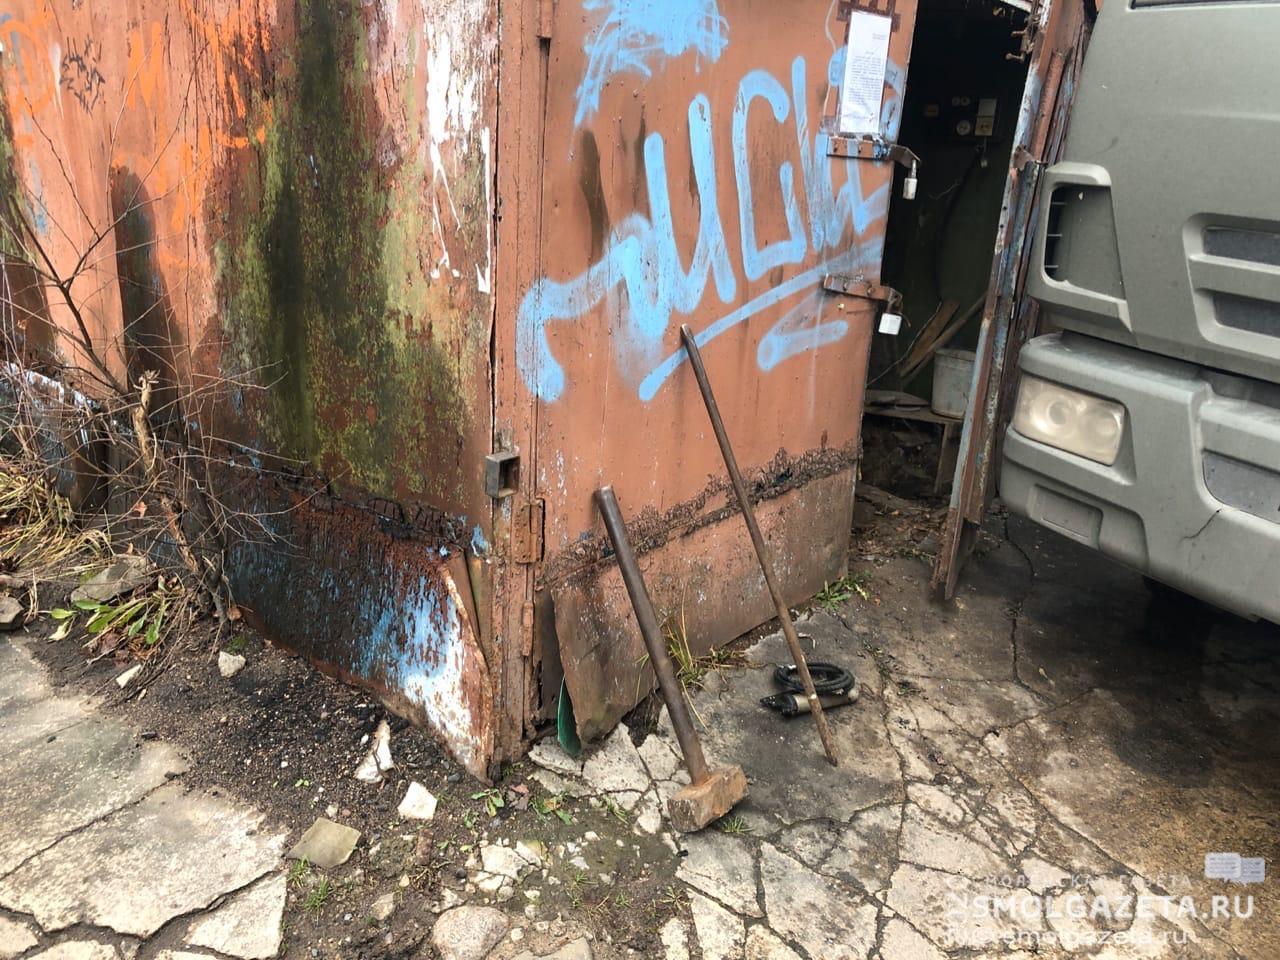 В Заднепровском районе Смоленска обнаружили незаконно установленные гаражи